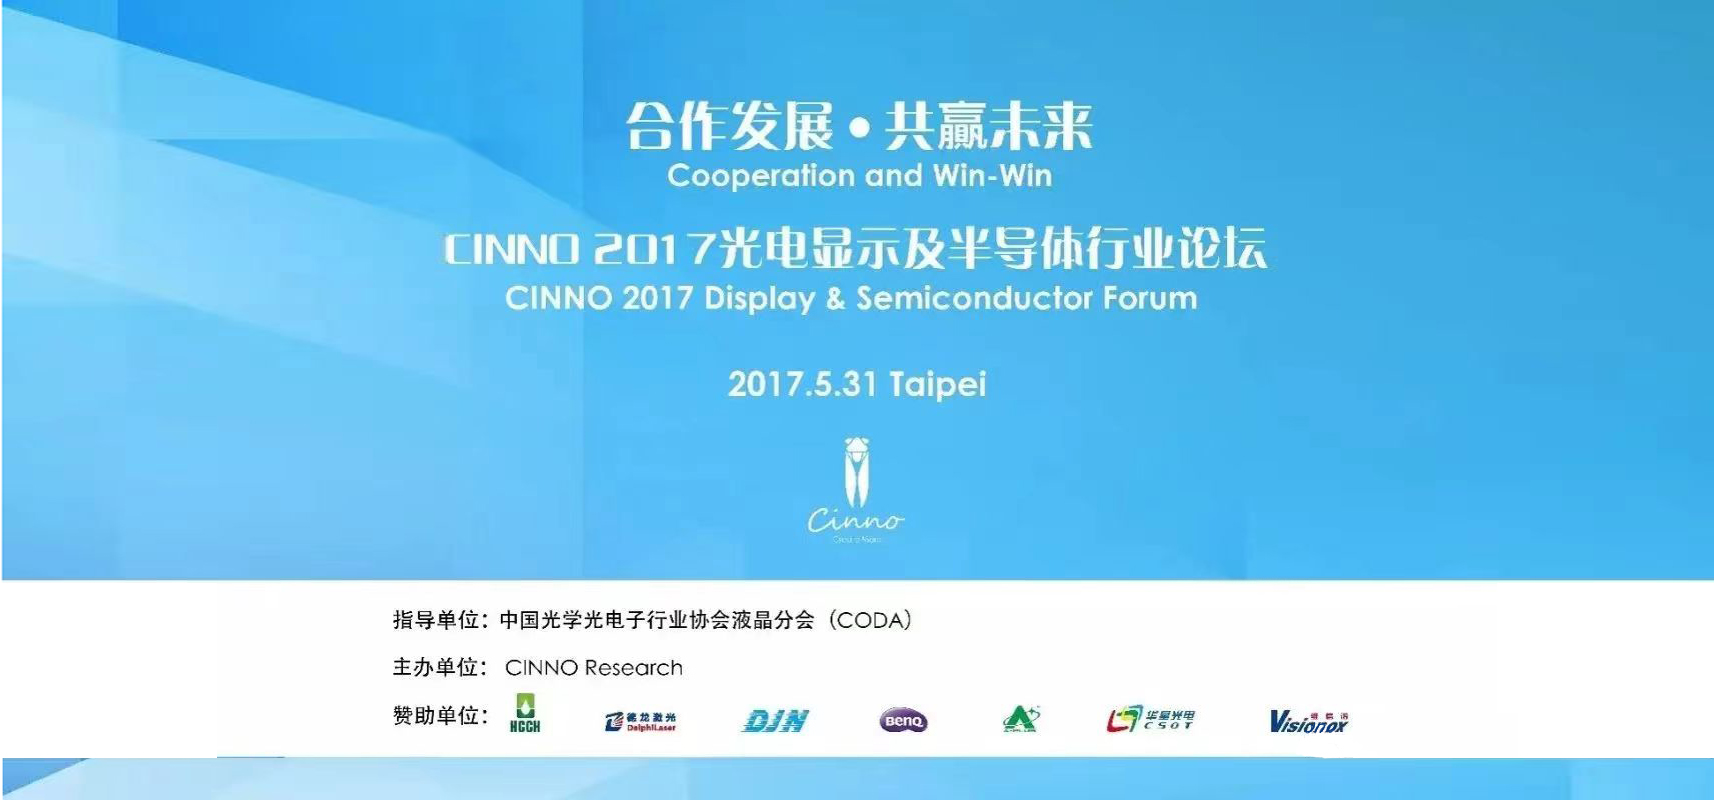 CINNO 2017台北光电显示及半导体行业论坛